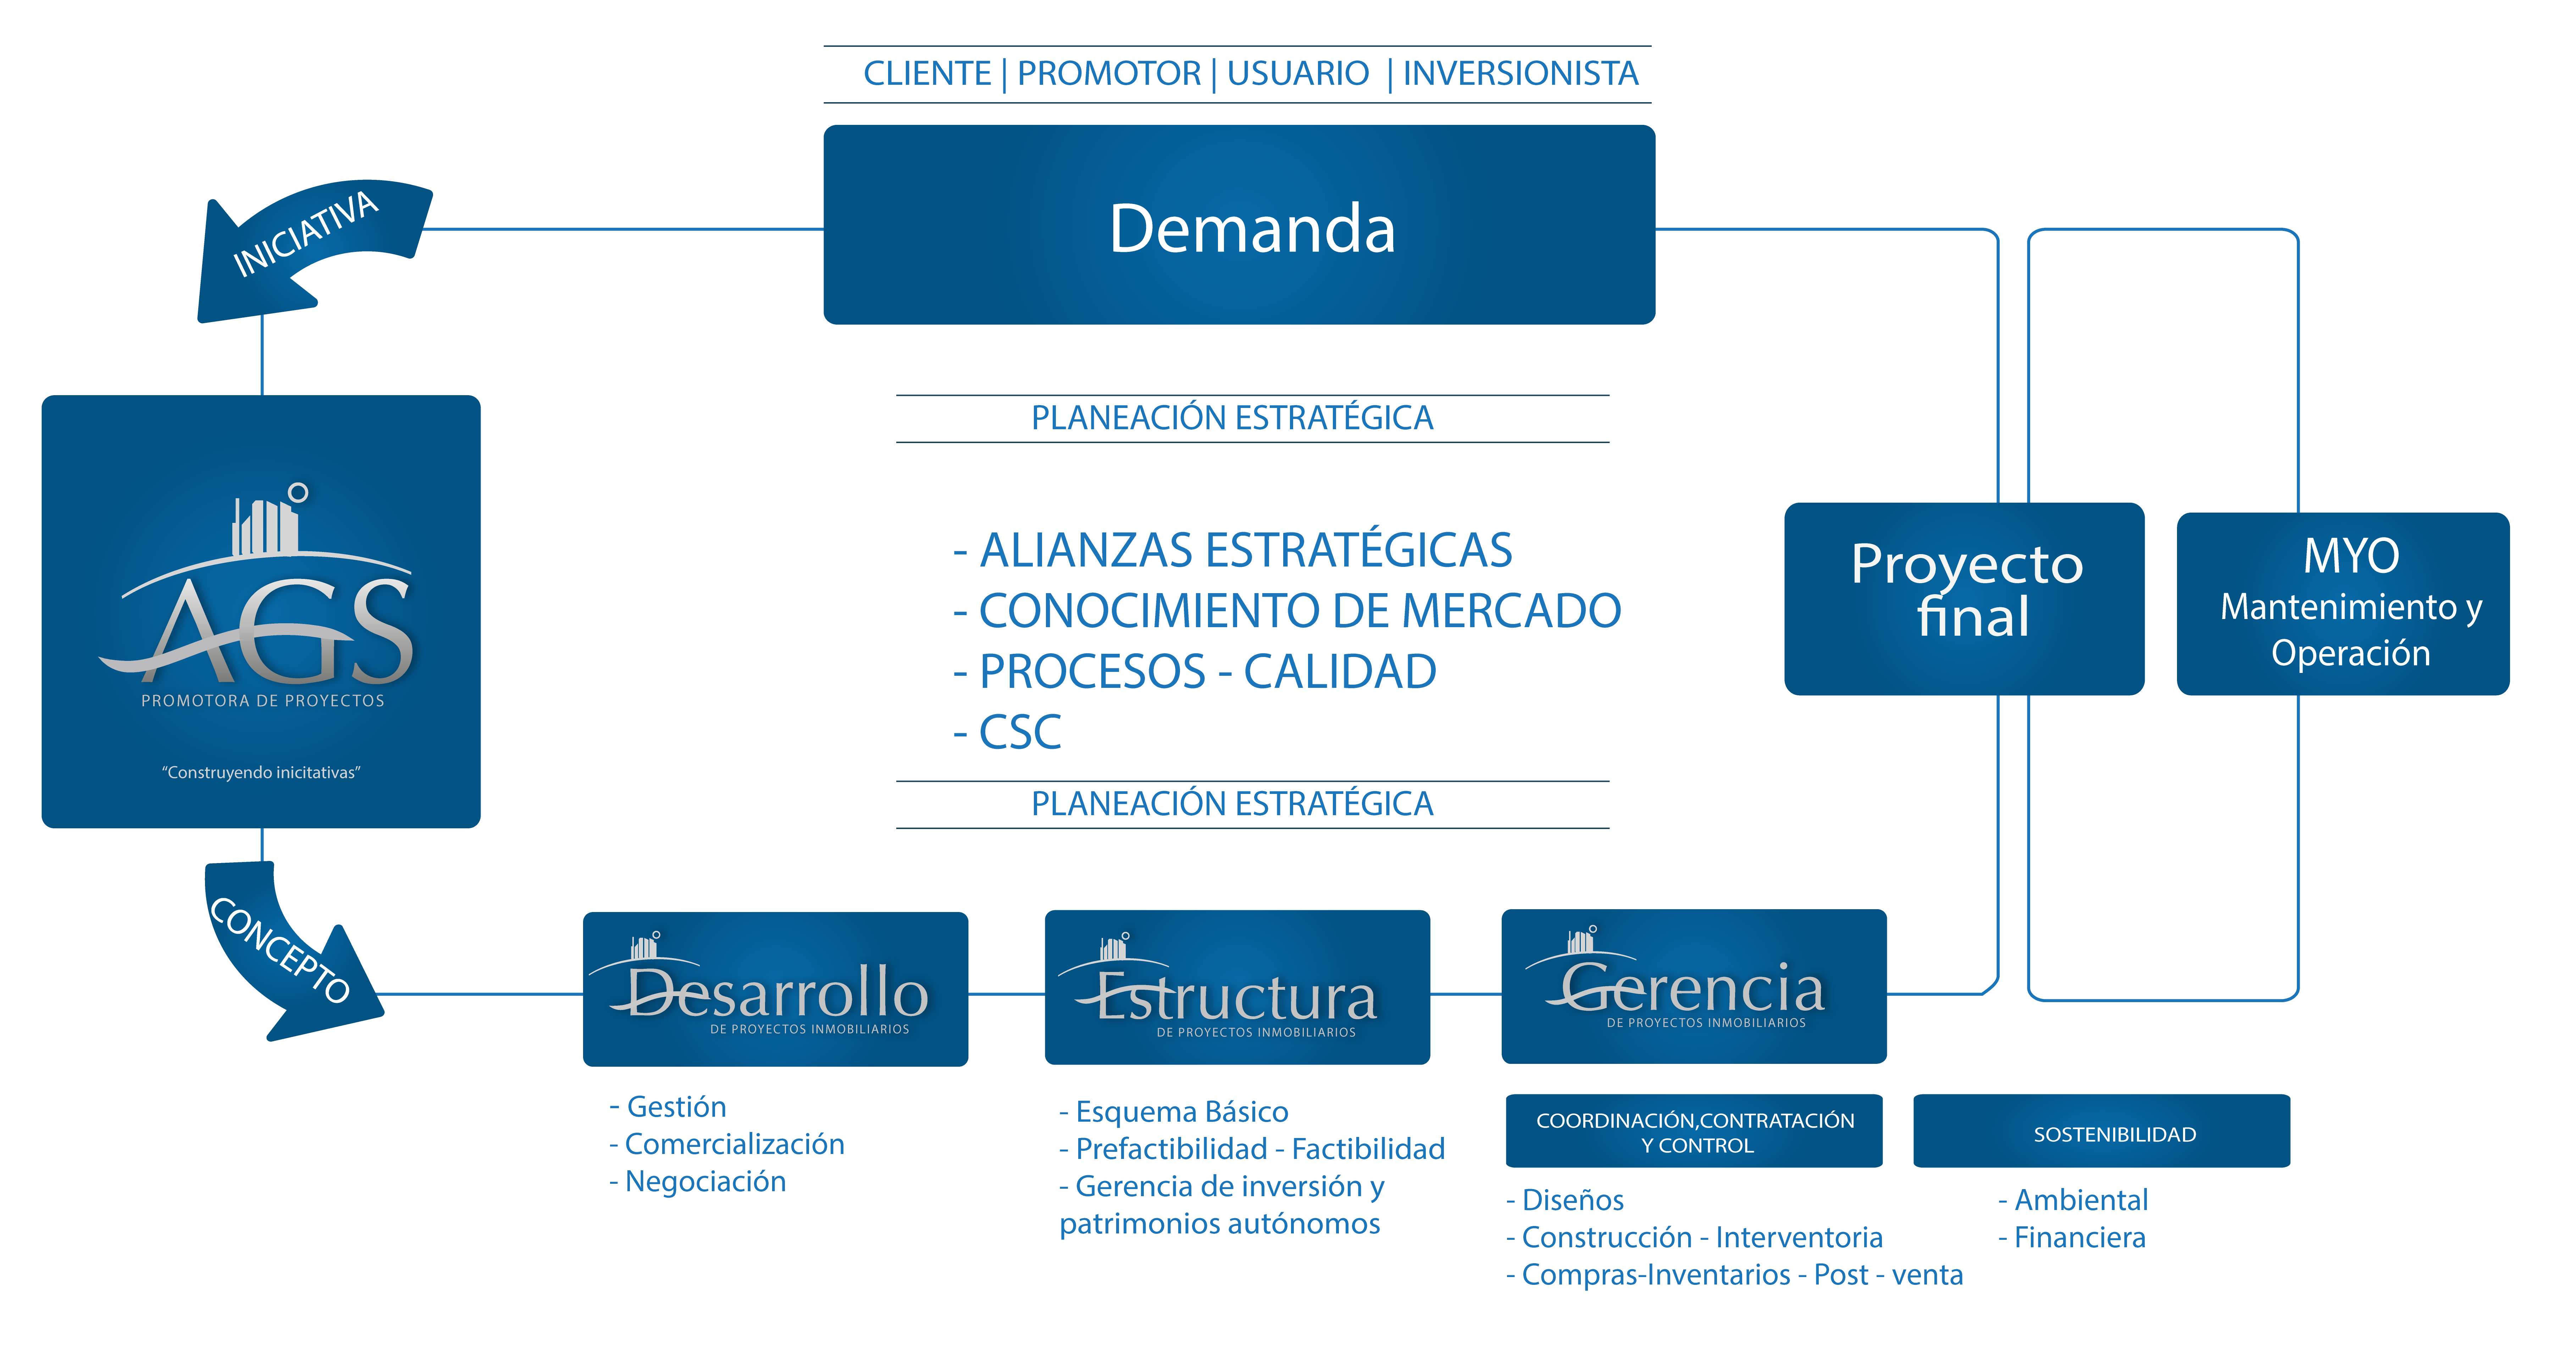 Modelo de Negocio - AGS Promotora de Proyectos Inmobiliarios, Cartagena,  ColombiaAGS Promotora de Proyectos Inmobiliarios, Cartagena, Colombia